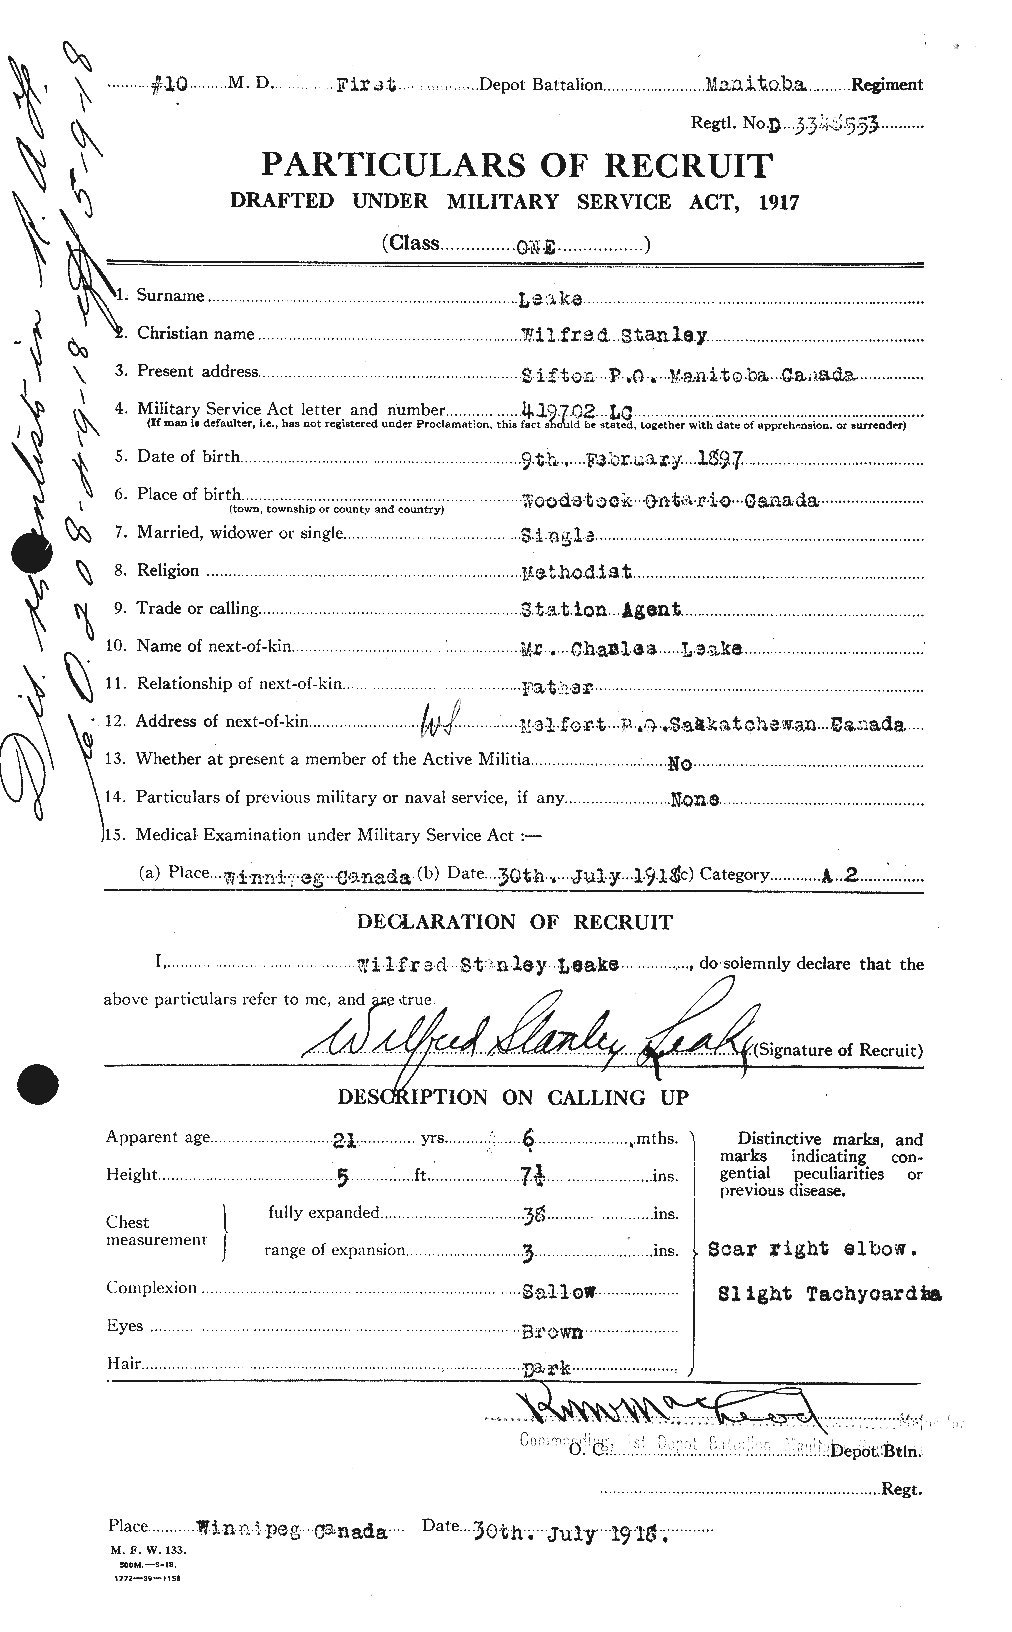 Dossiers du Personnel de la Première Guerre mondiale - CEC 455989a